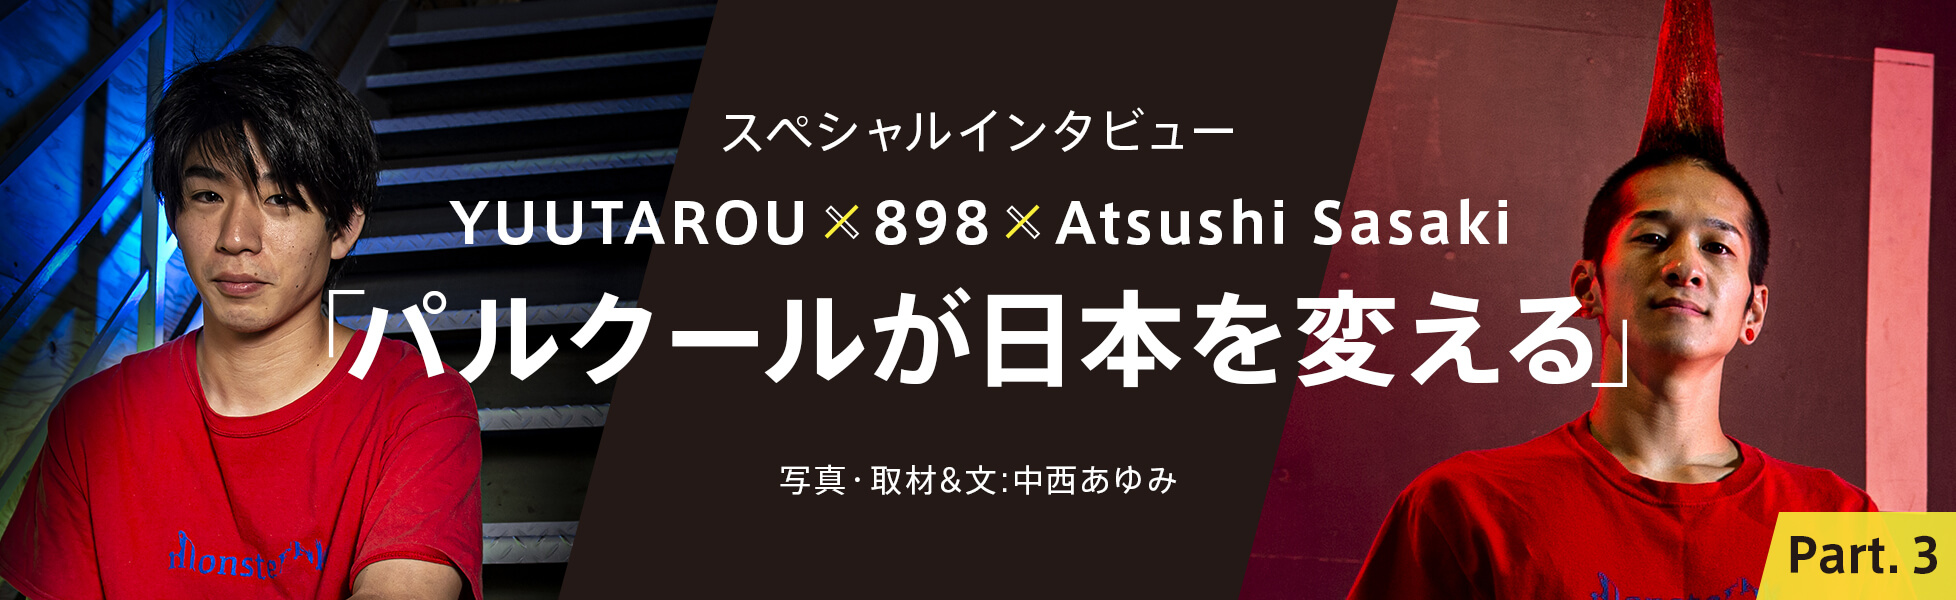 スペシャルインタビュー“YUUTAROU x 898 x Atsushi Sasaki”「パルクールが日本を変える」写真・取材＆文：中西あゆみ